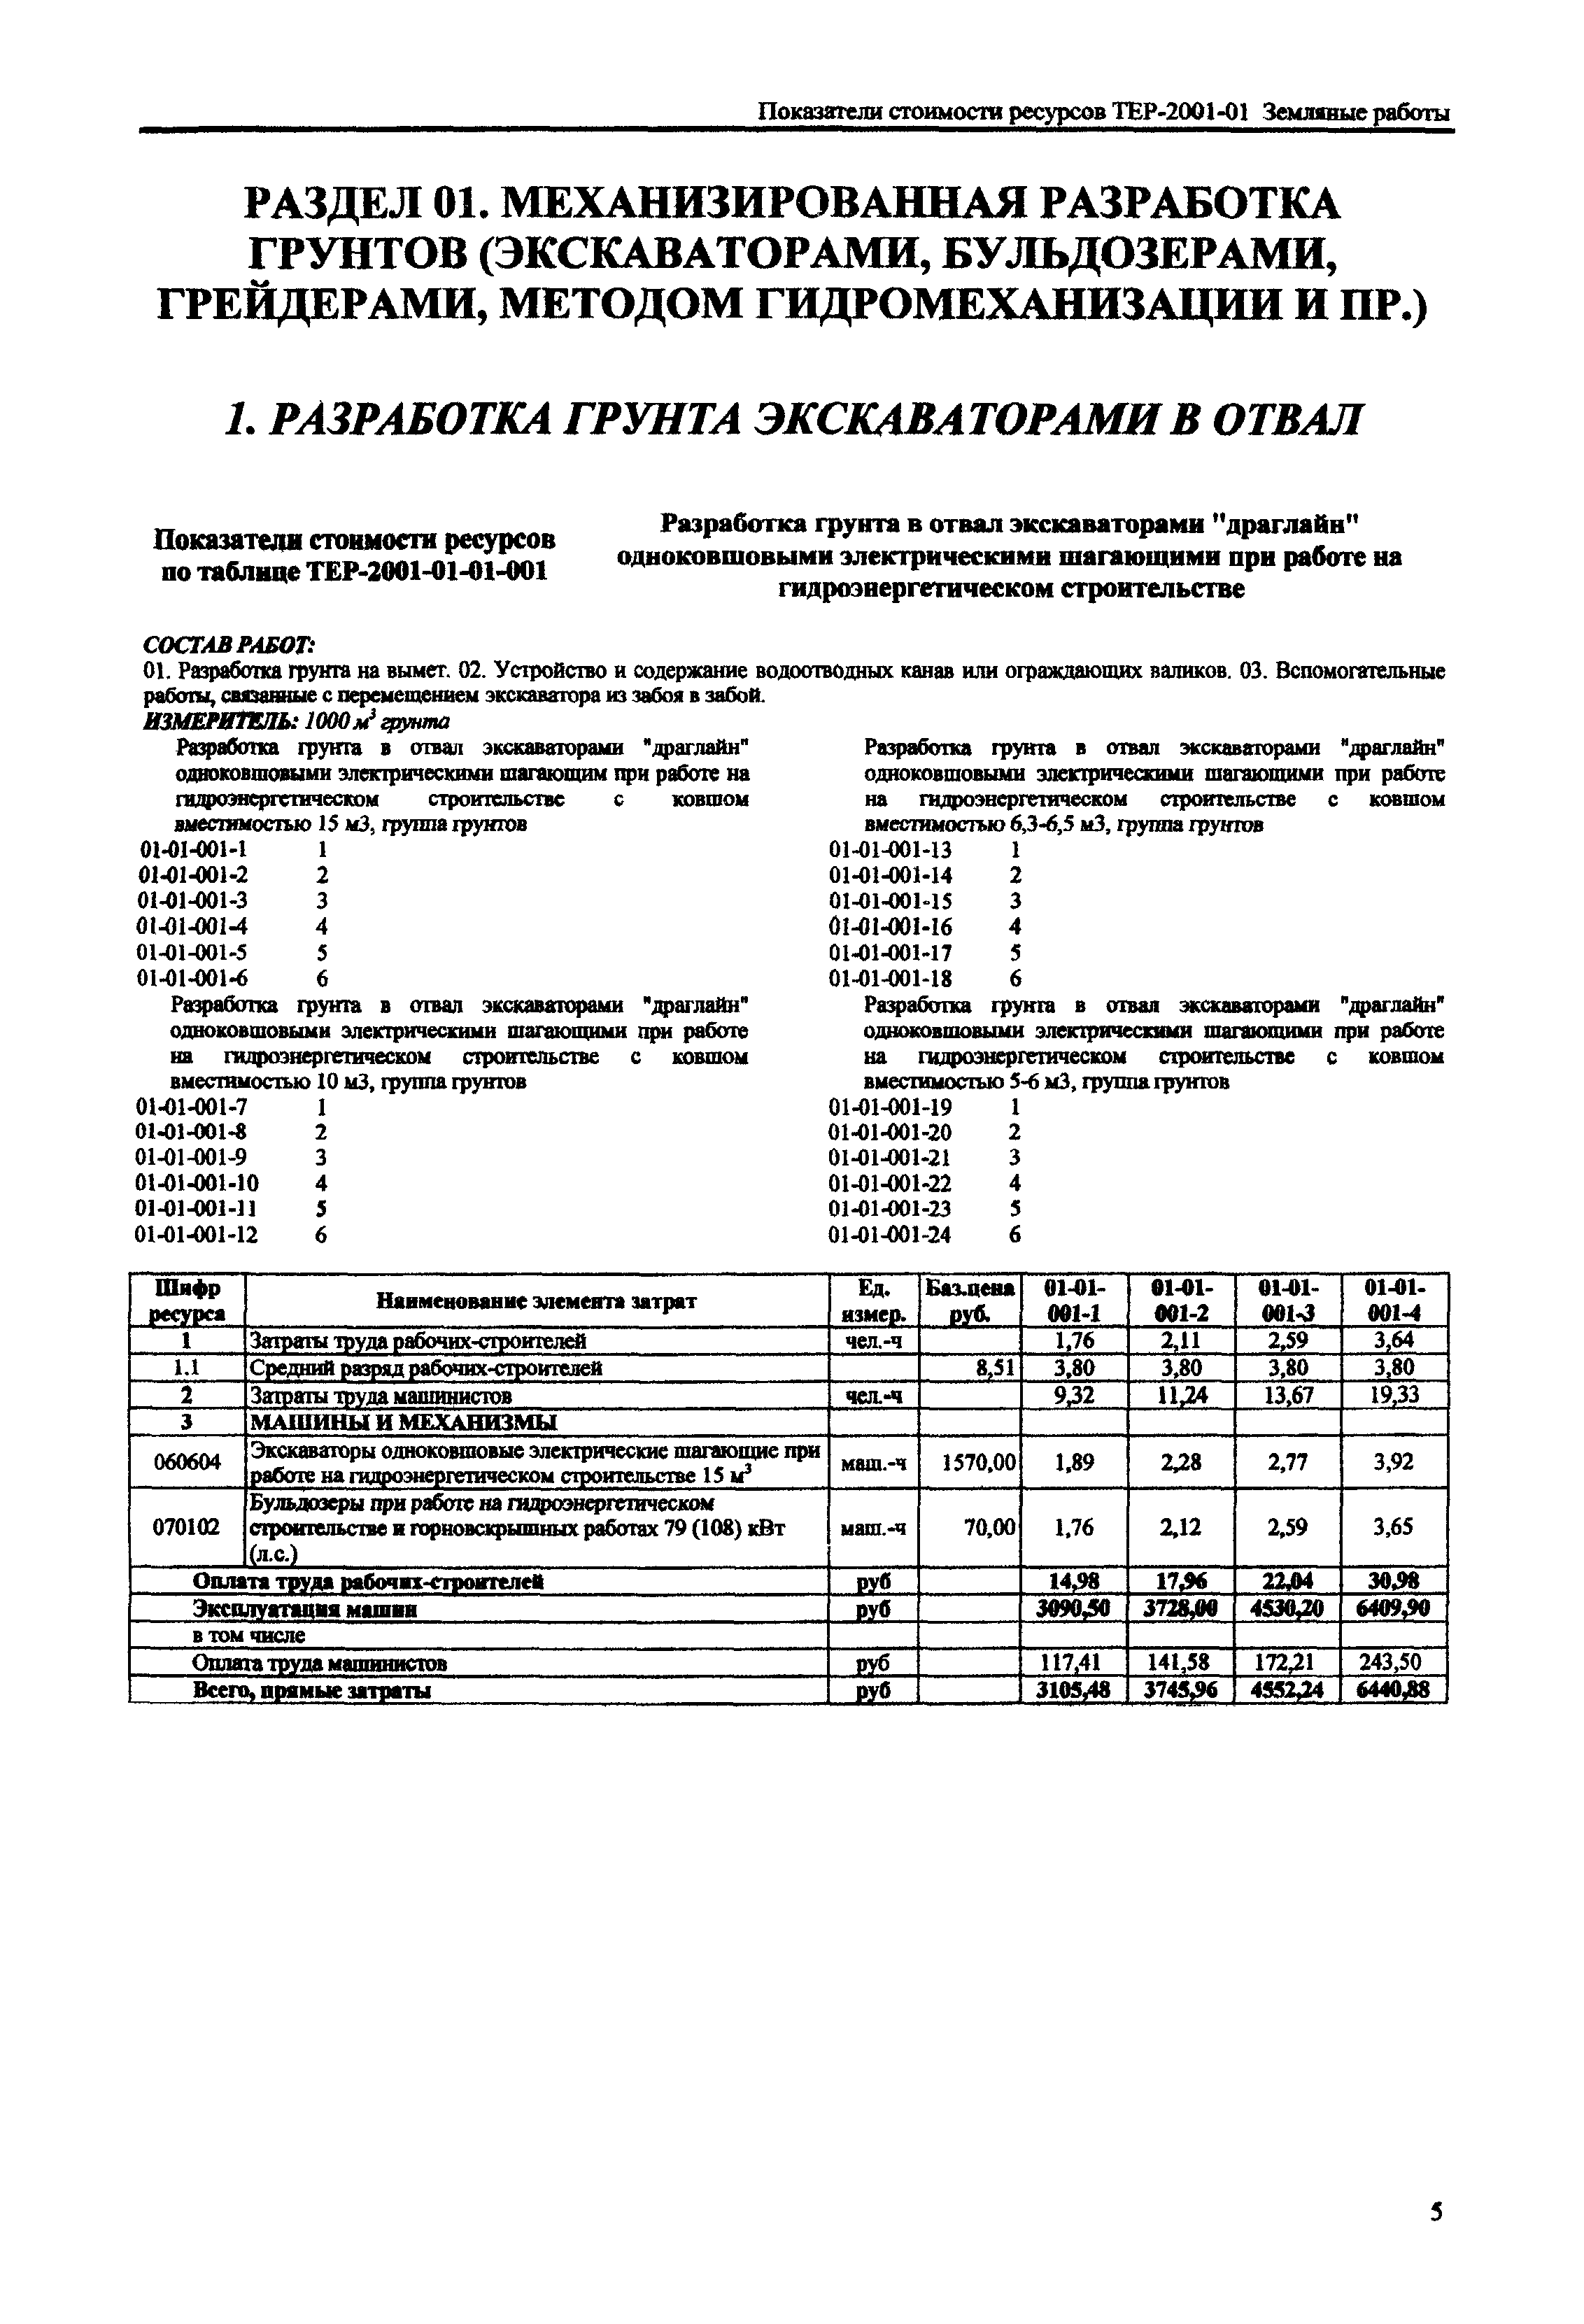 Справочное пособие к ТЕР 81-02-01-2001